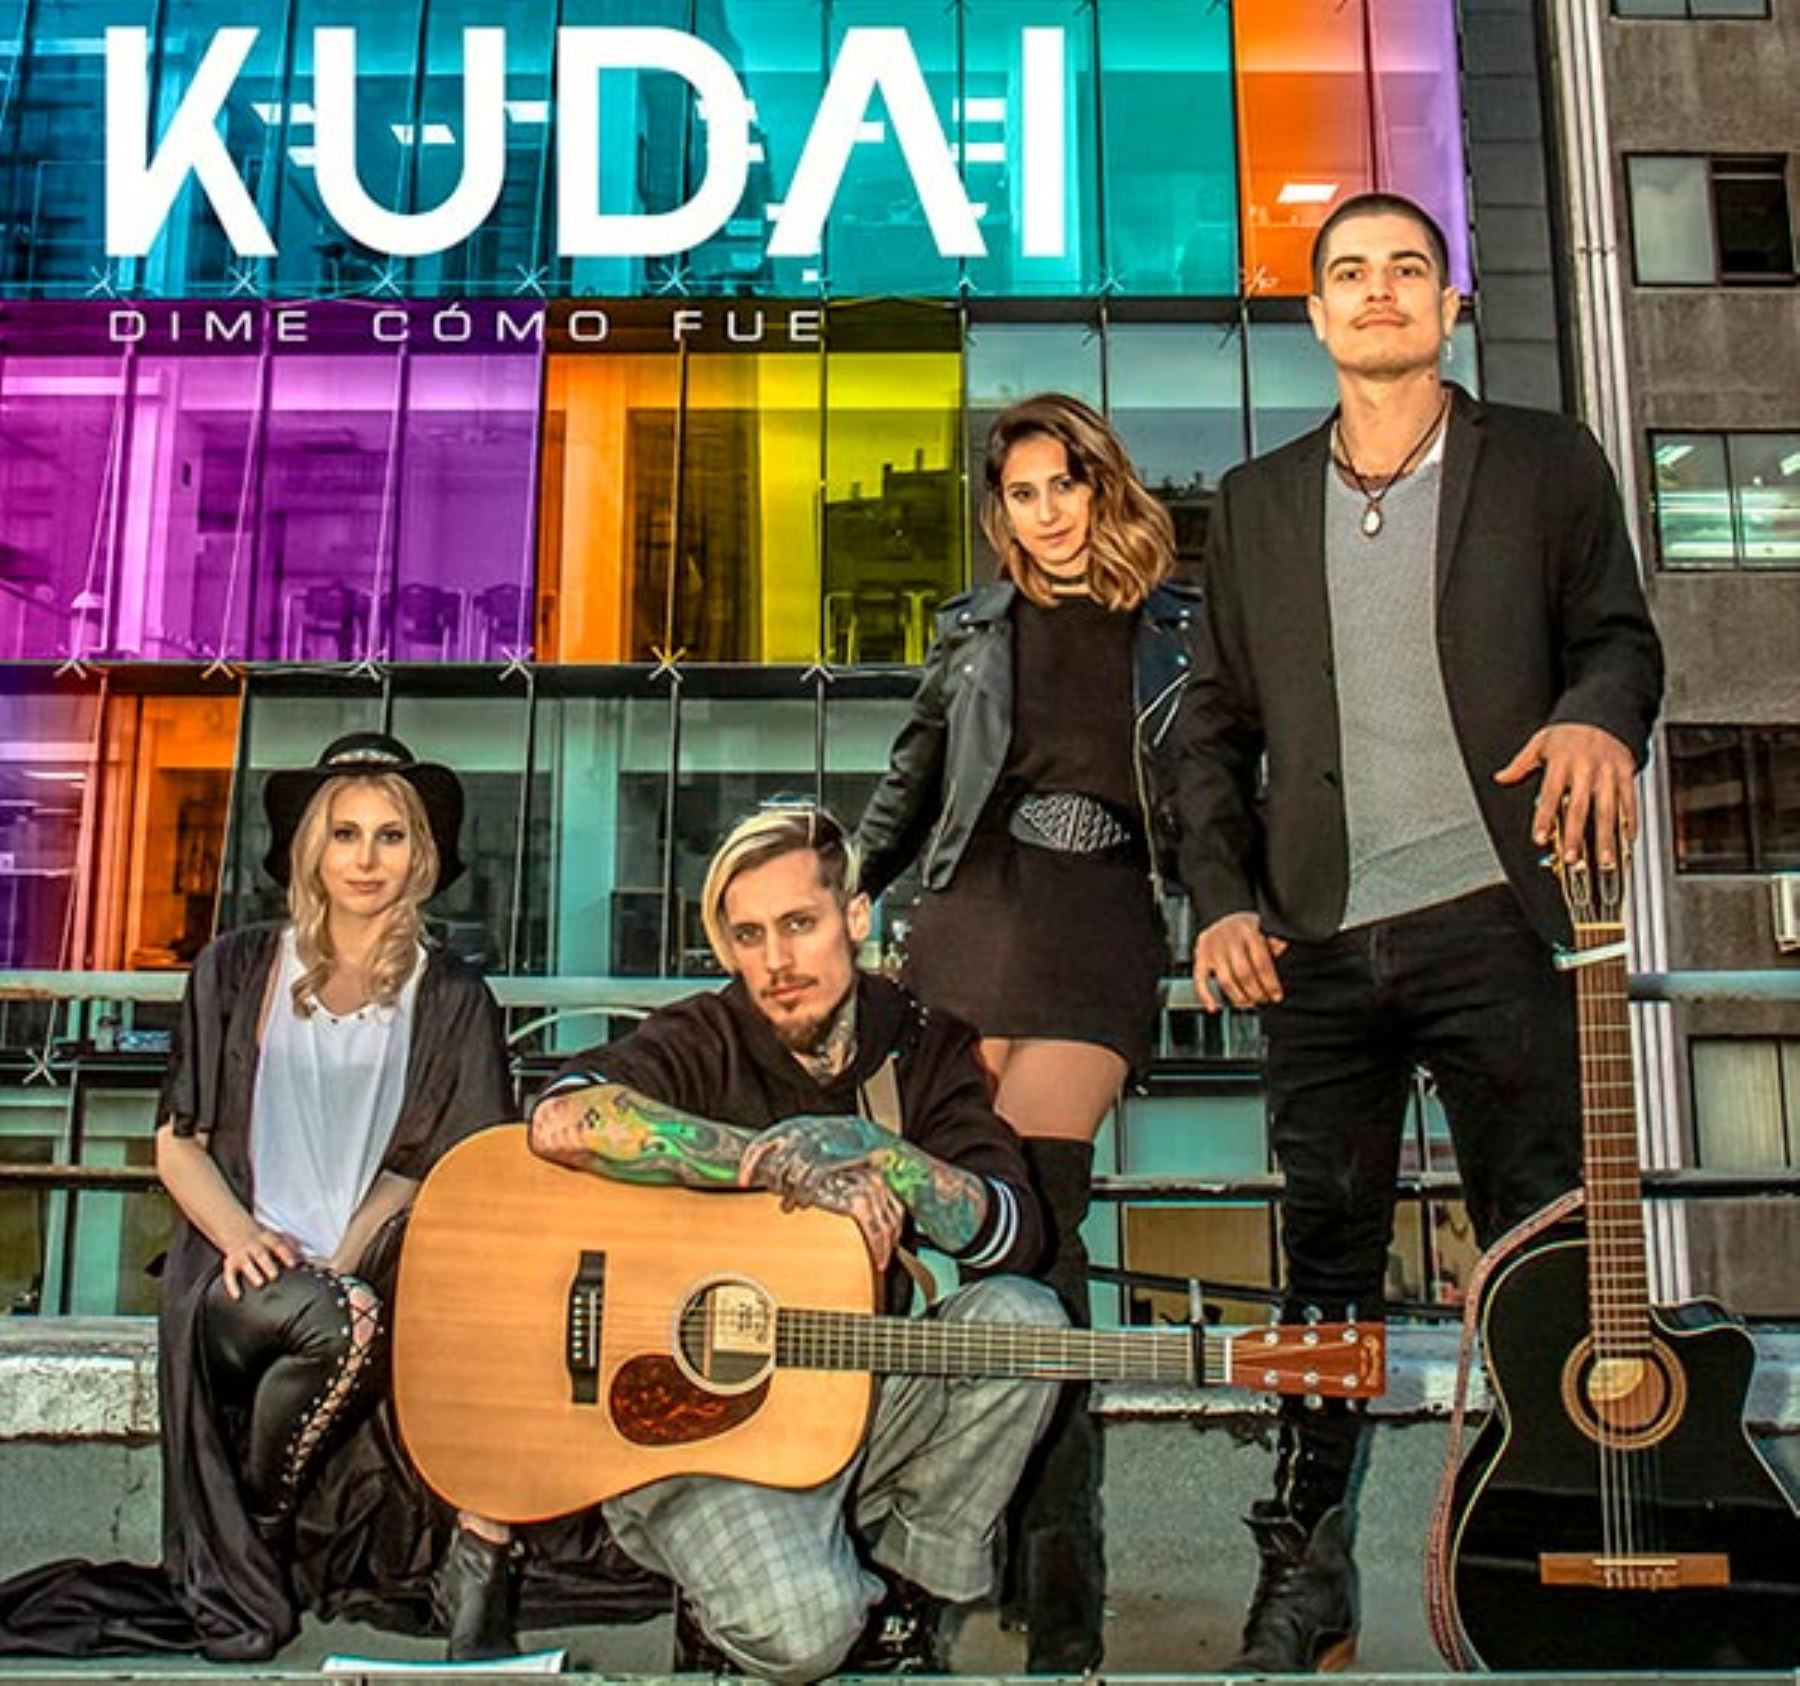 Kudai muy pronto lanza su nuevo disco.